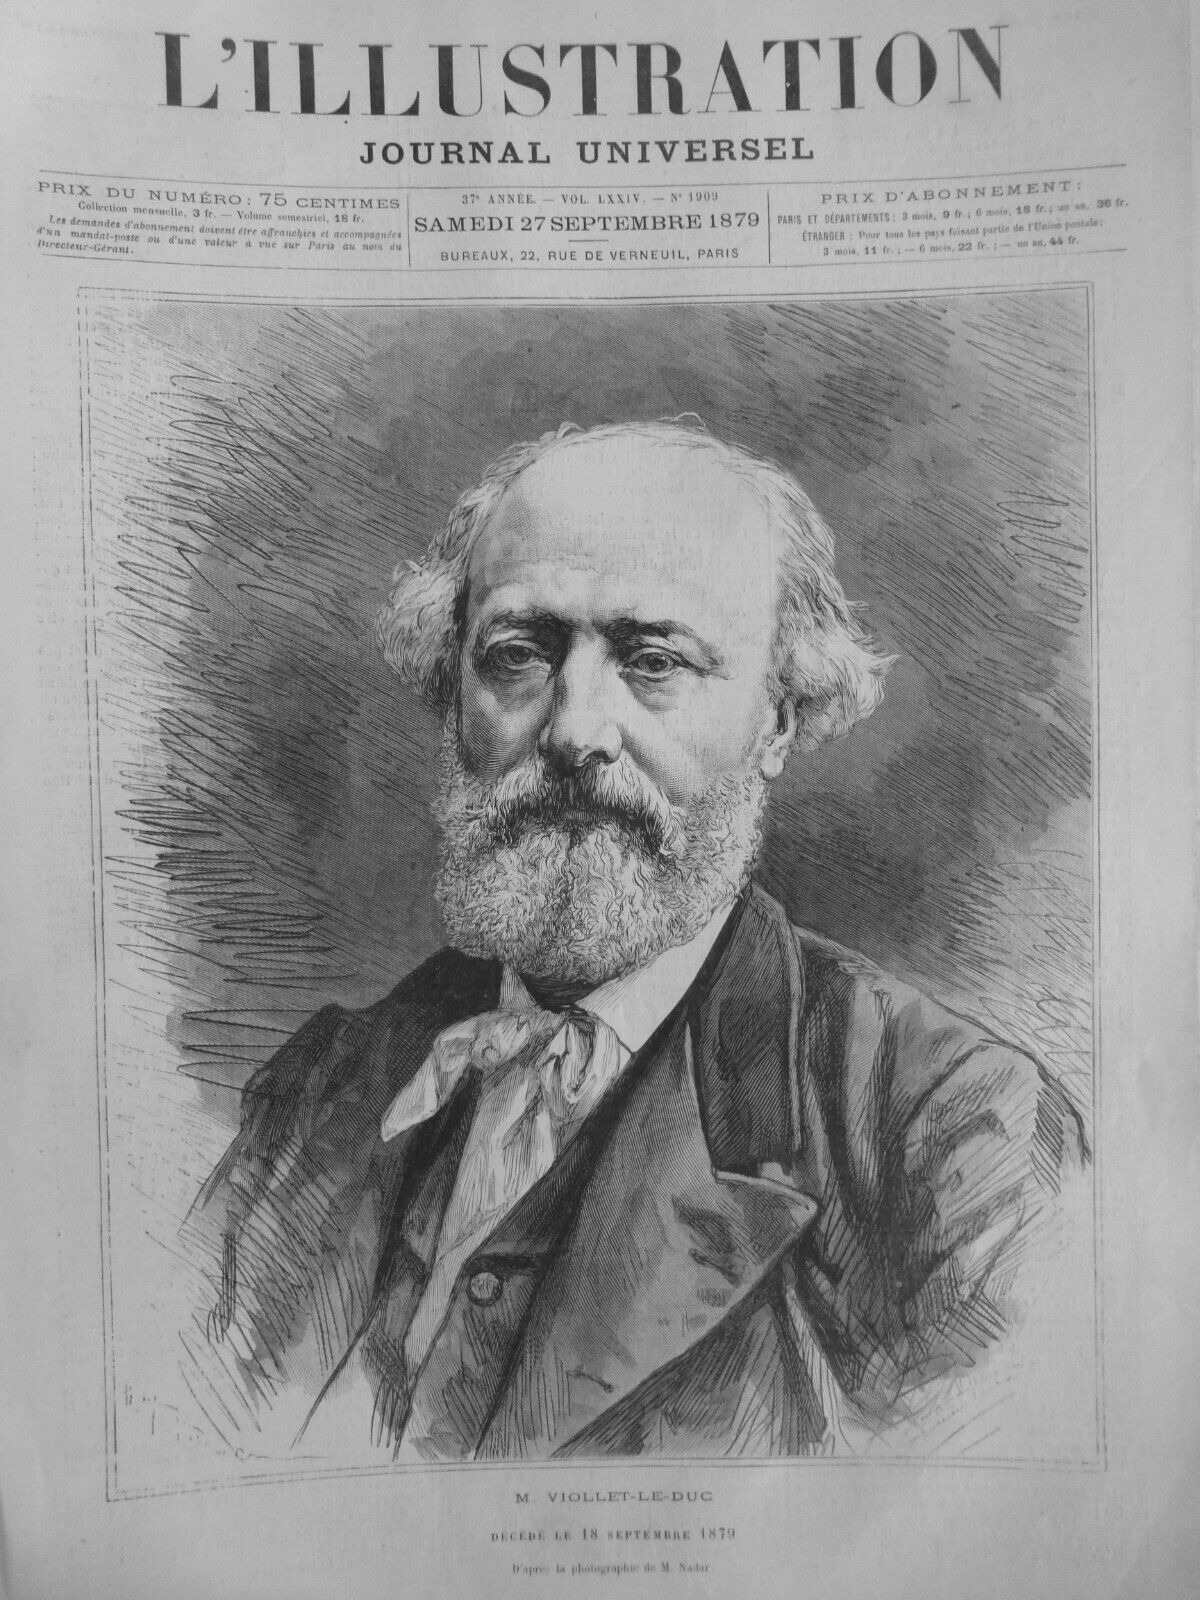 1860 1879 VIOLET LE DUC CHATEAU DE PIERREFONDS 5 OLD NEWSPAPERS